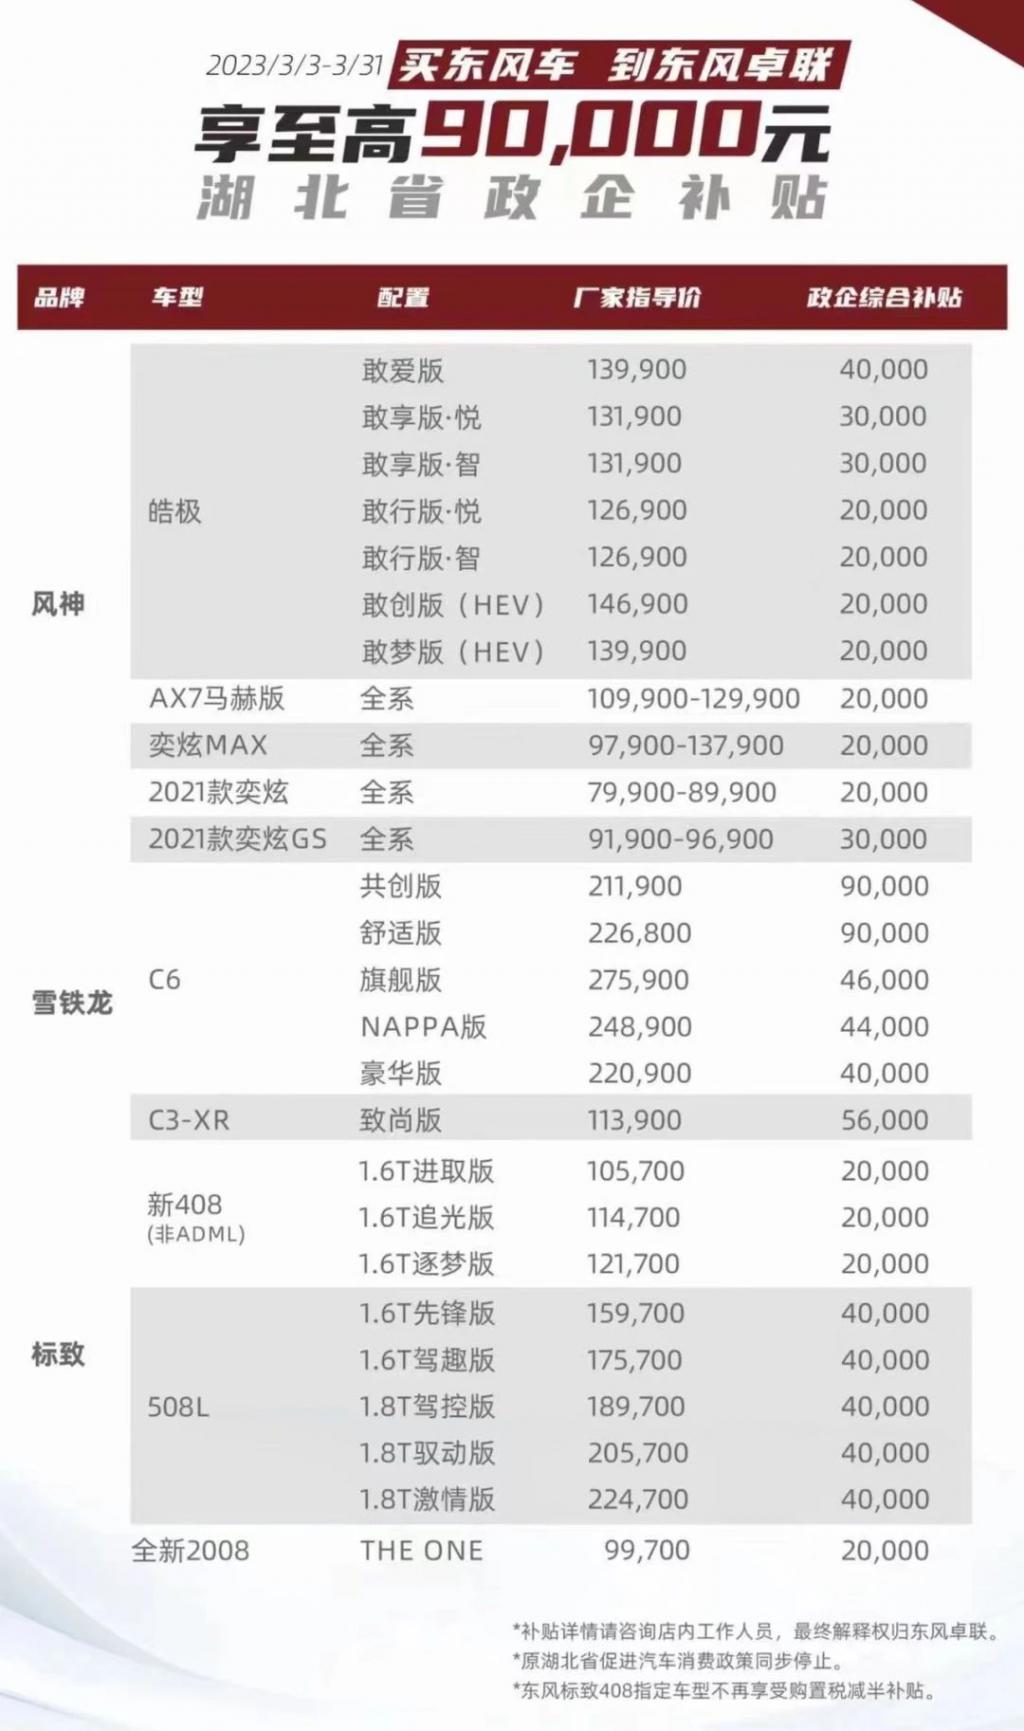 一抢而空！雪铁龙 C6 只卖 12 万、CR-V 降 6 万，东风开启最强购车优惠